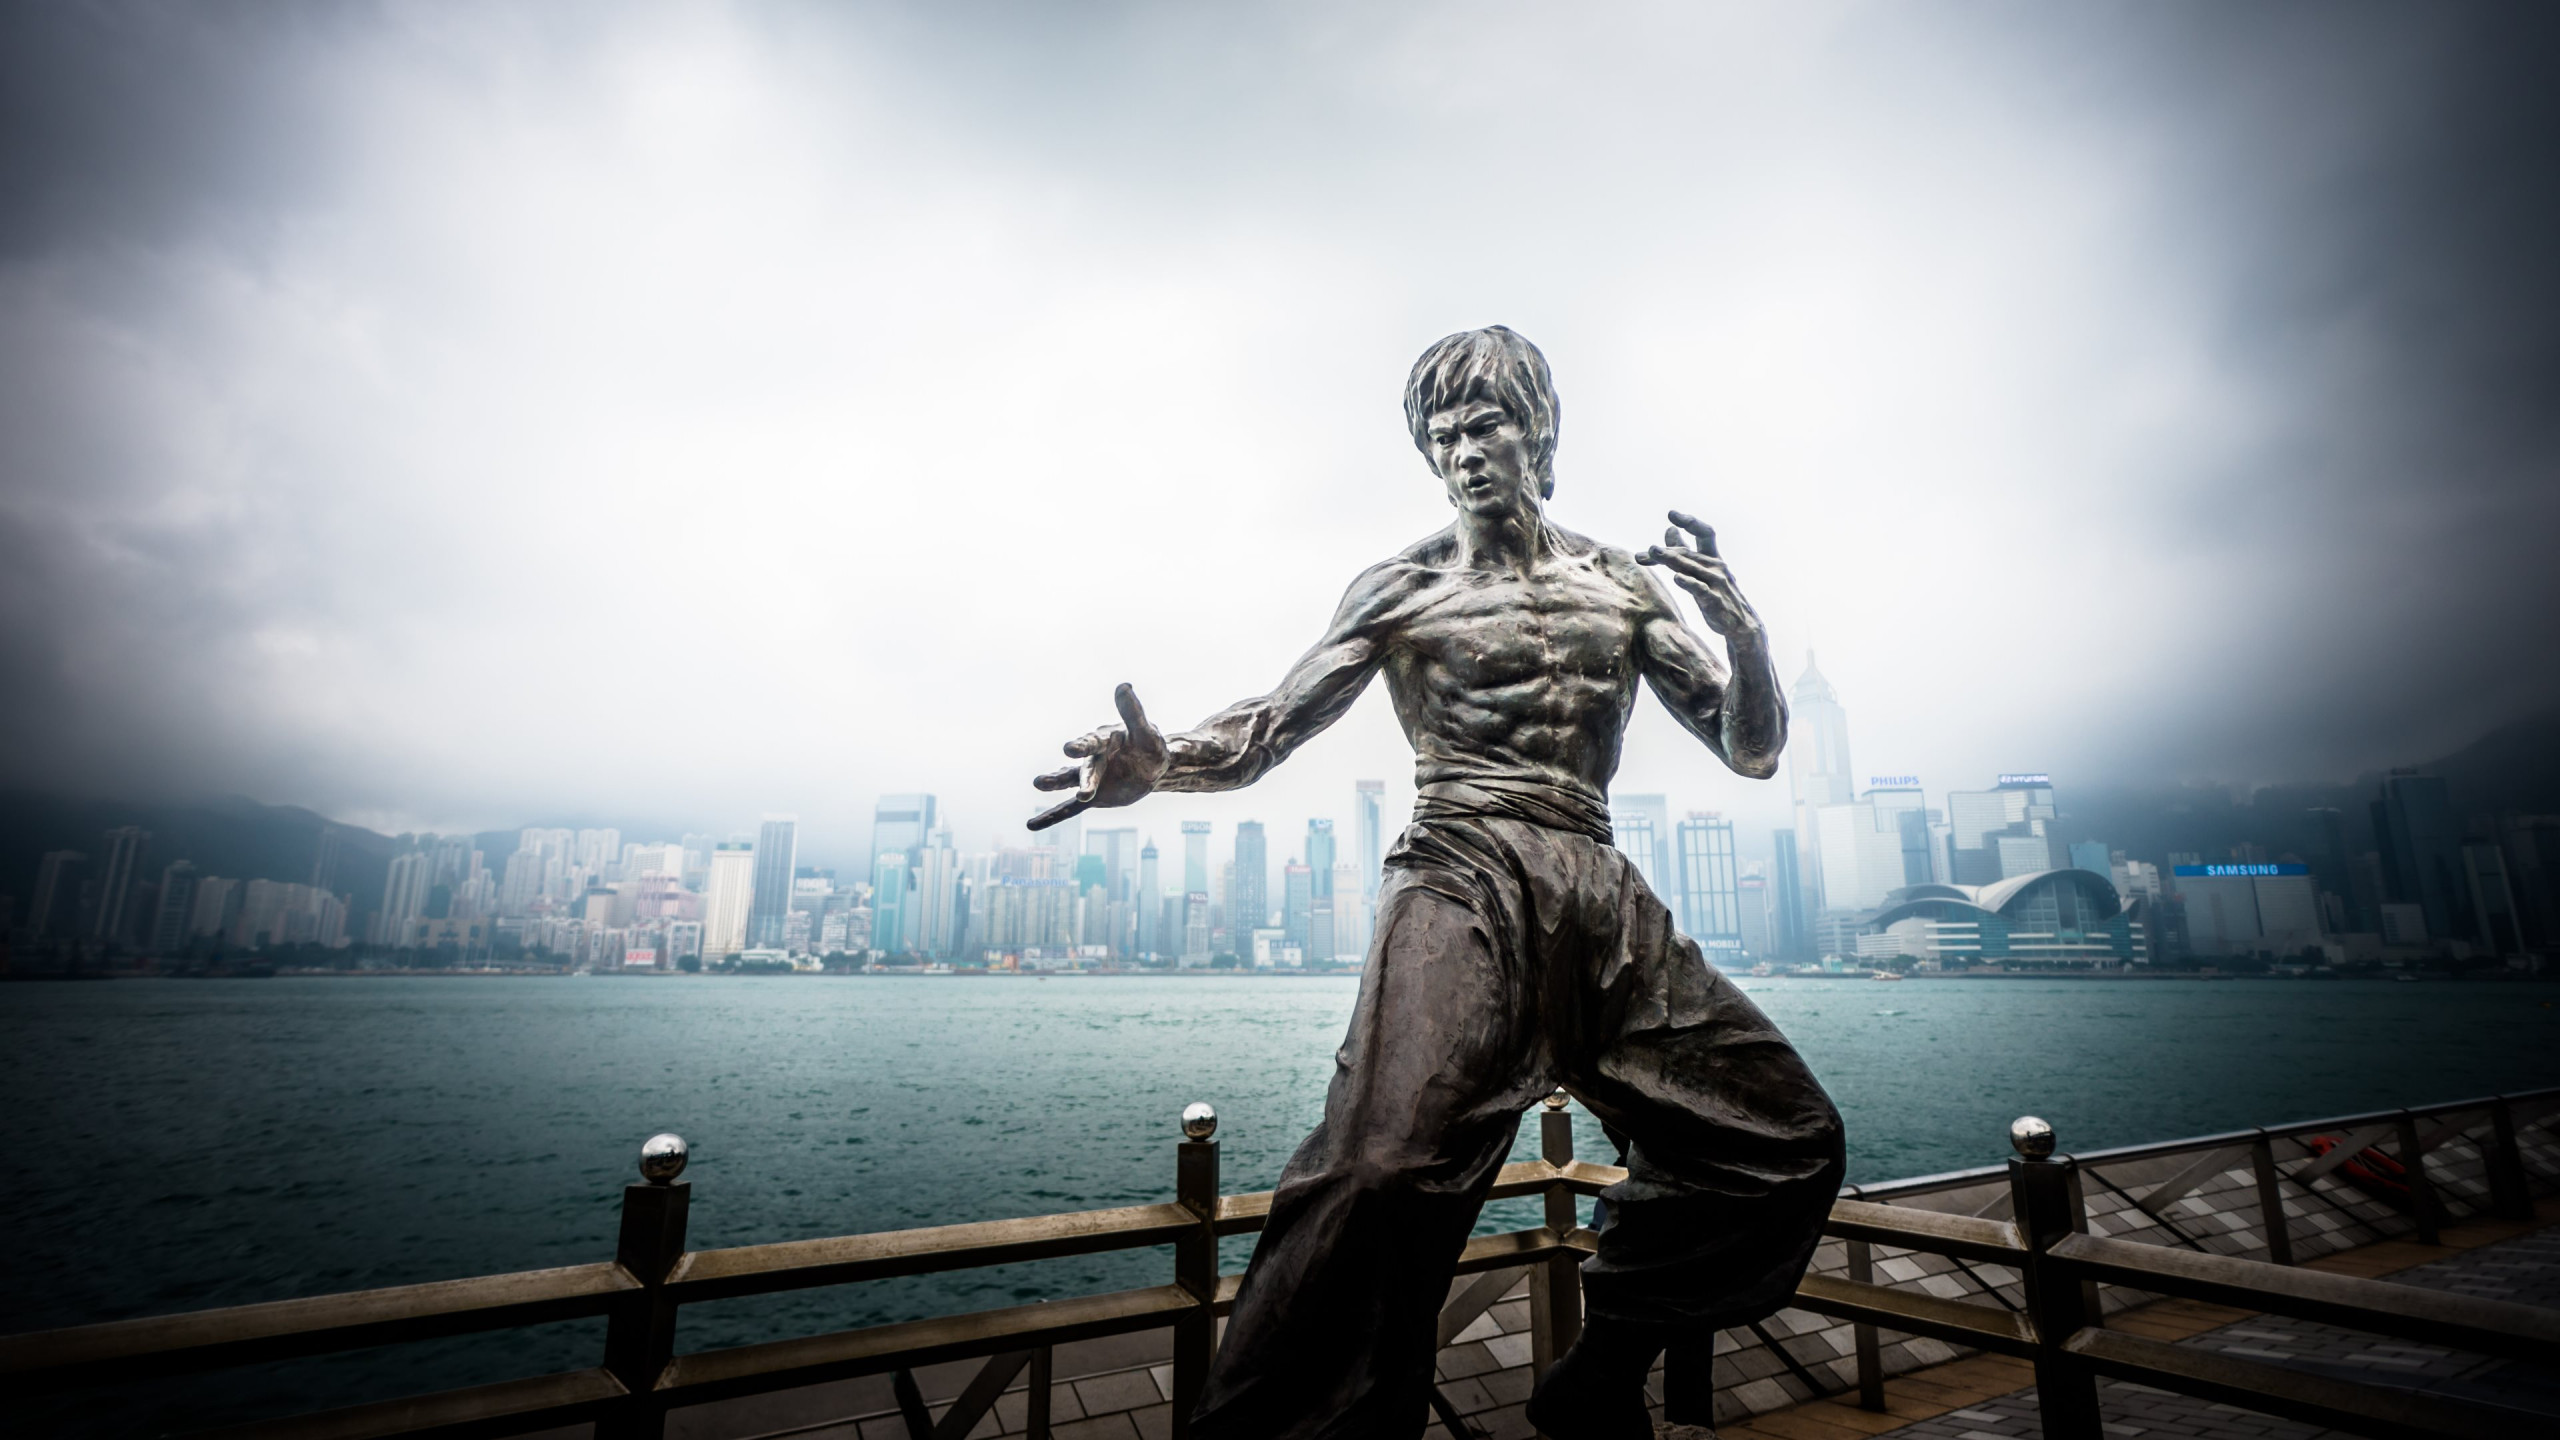 Bruce Lee statue from Hong Kong wallpaper 2560x1440